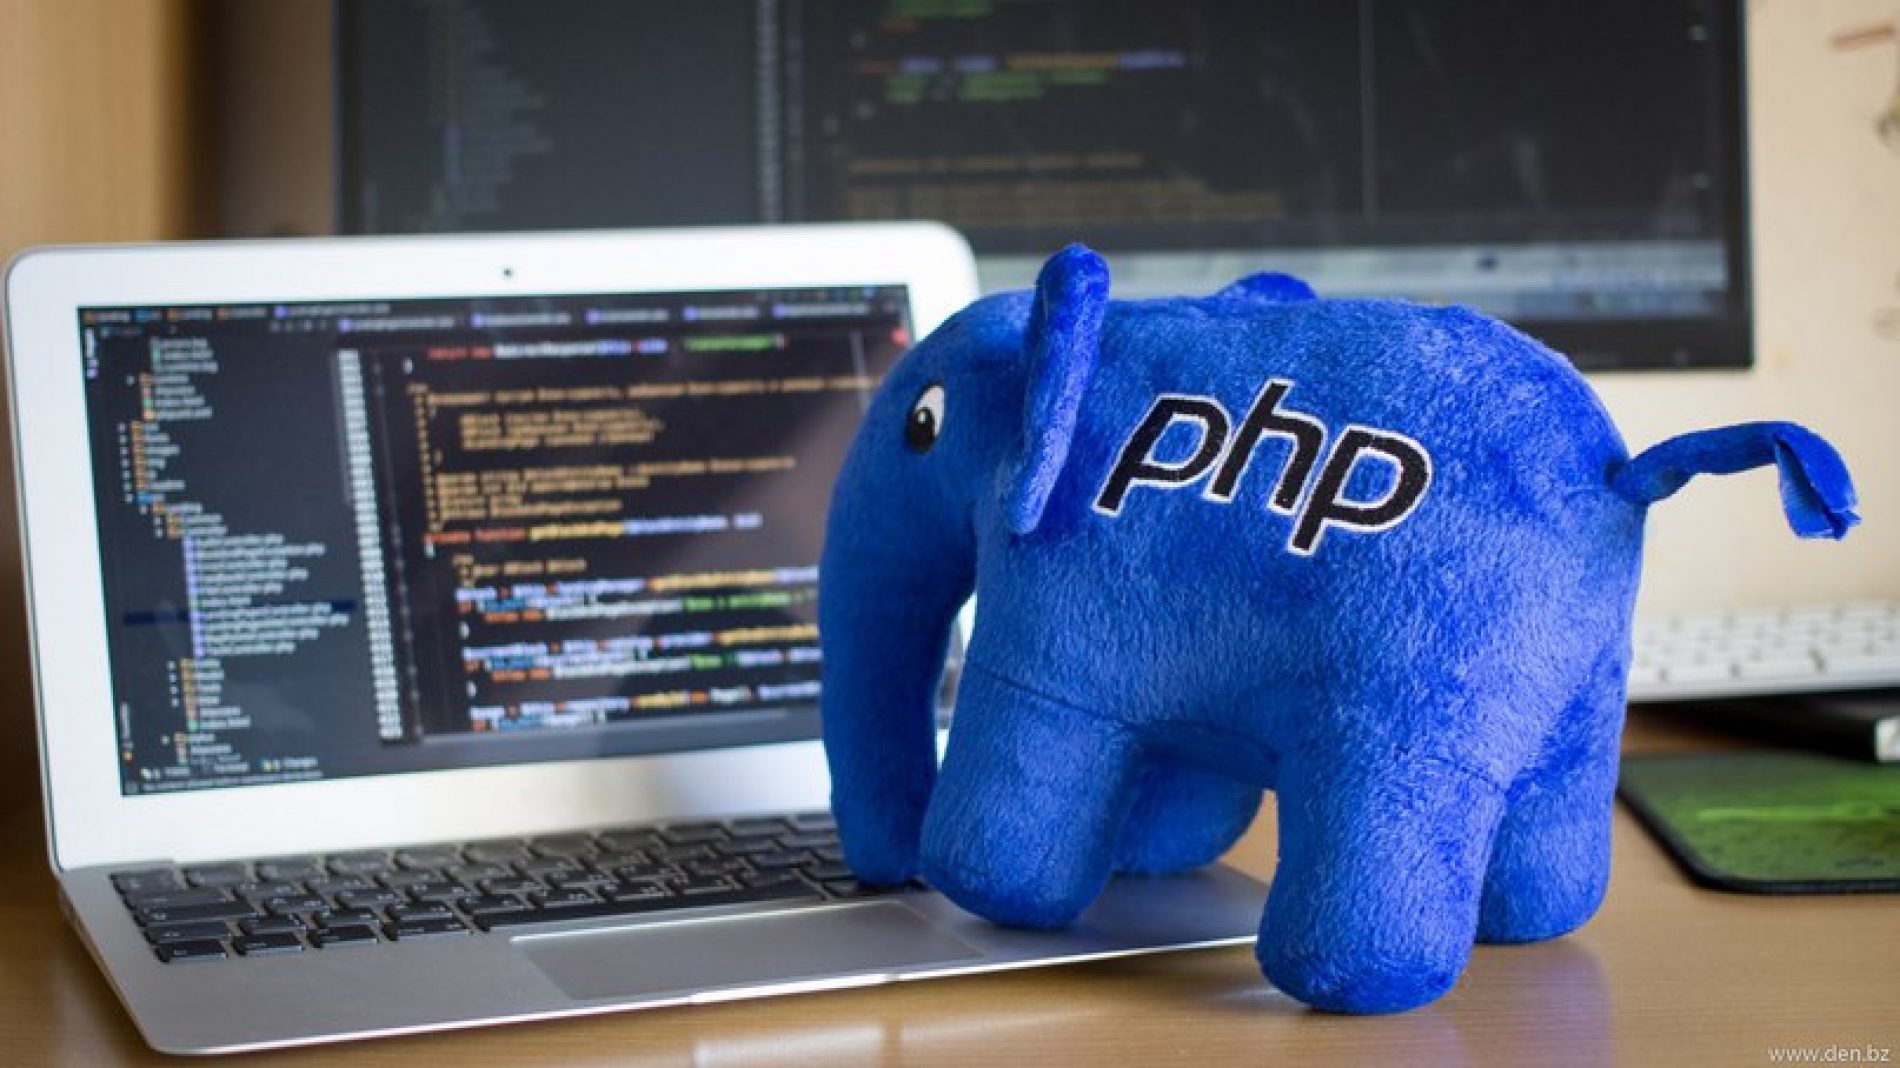 Curso de PHP Completo com Certificado Online e Presencial – Formação PHP